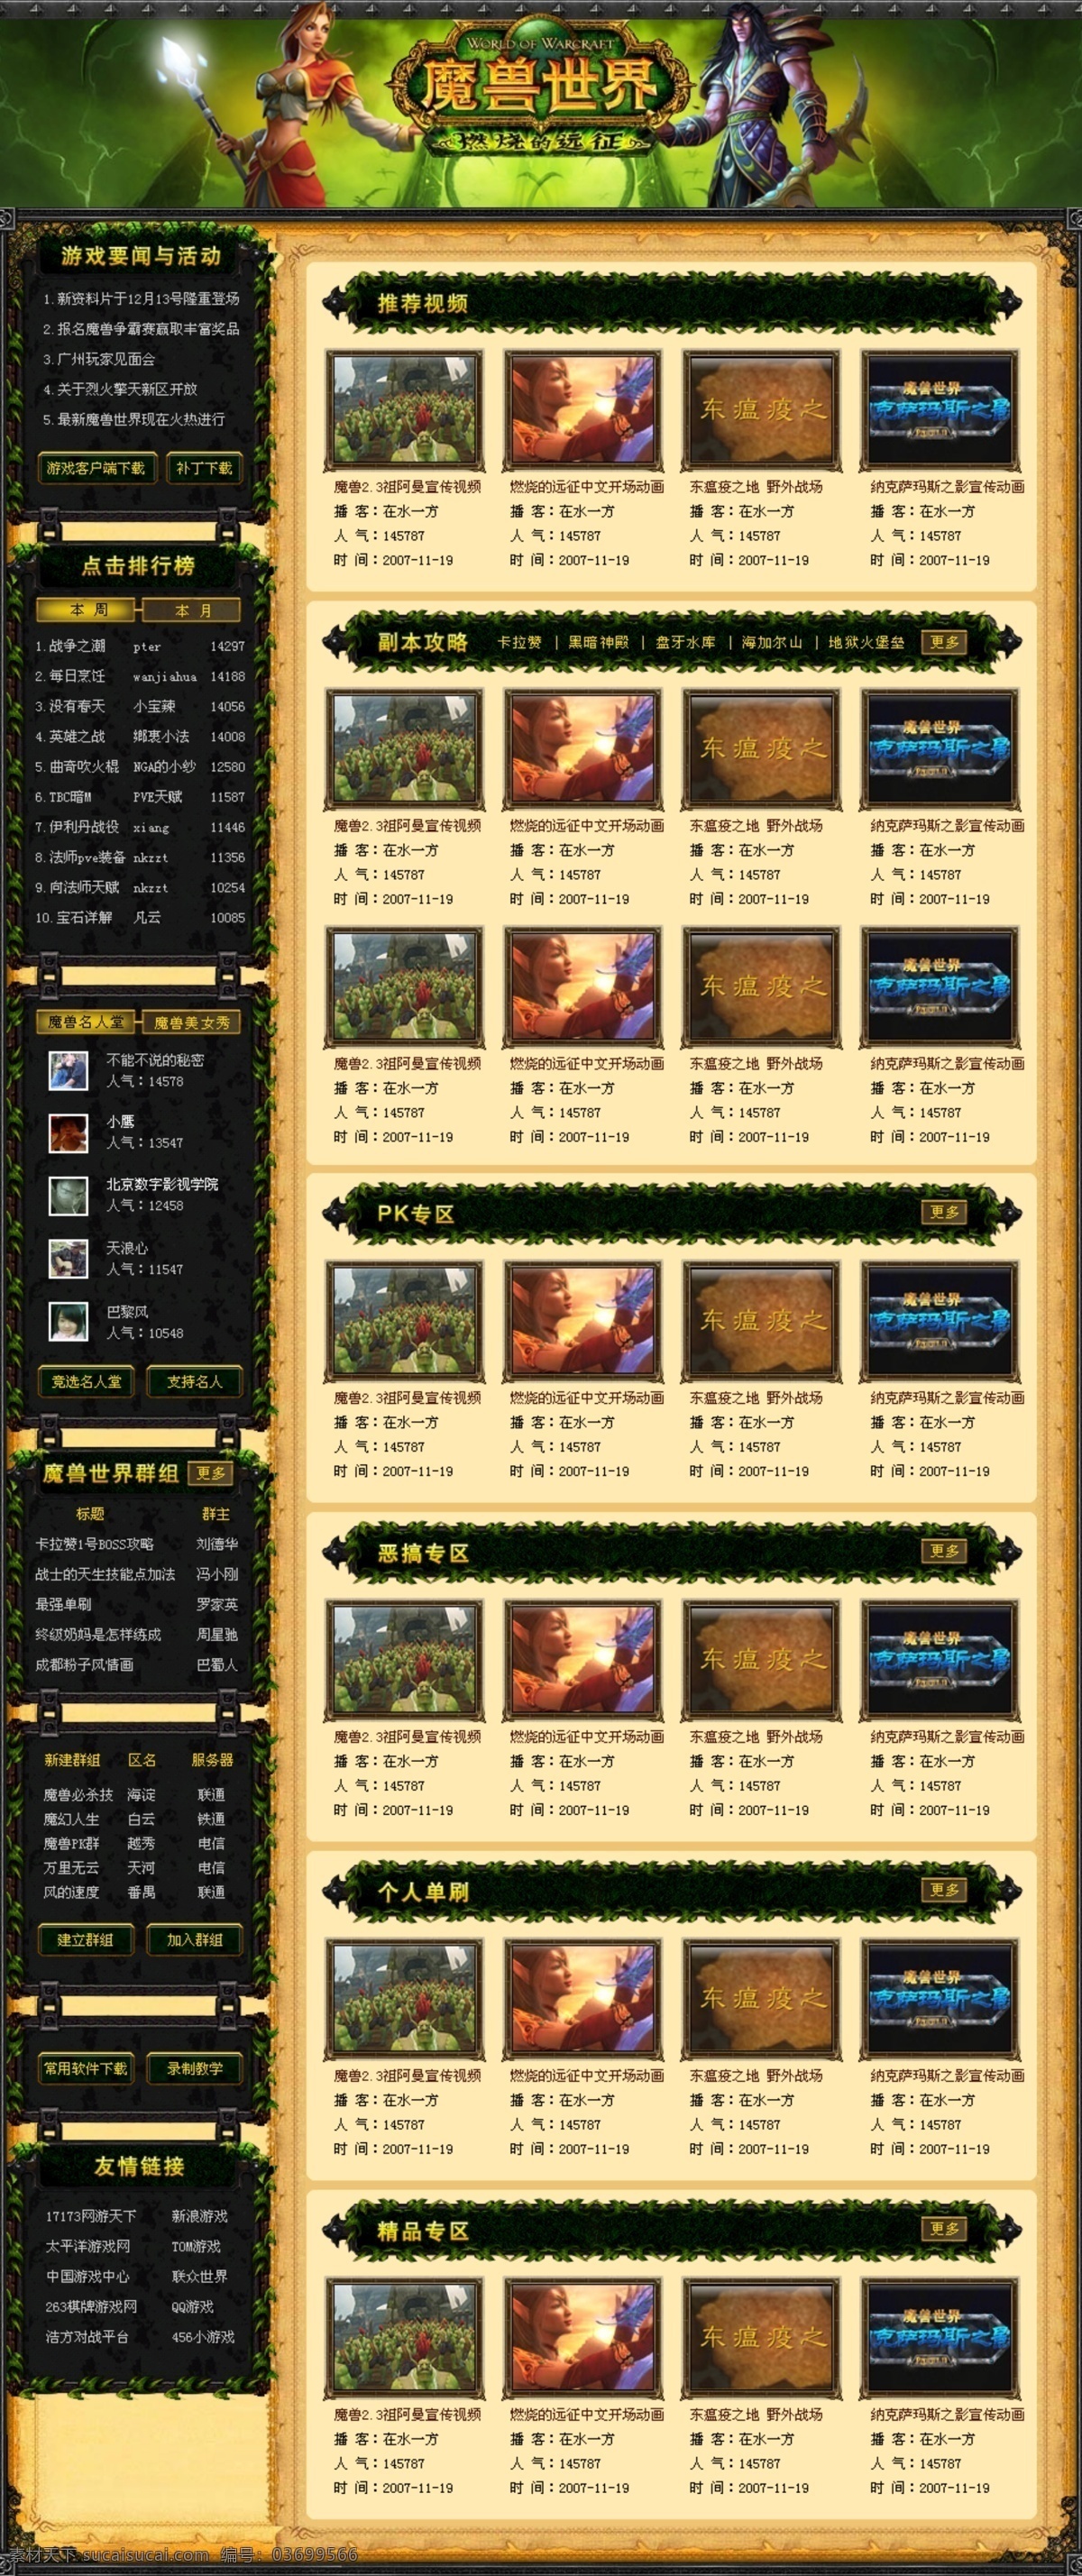 魔兽世界 游戏 专题 网站 游戏专题 游戏网站 中文模版 网页模板 源文件